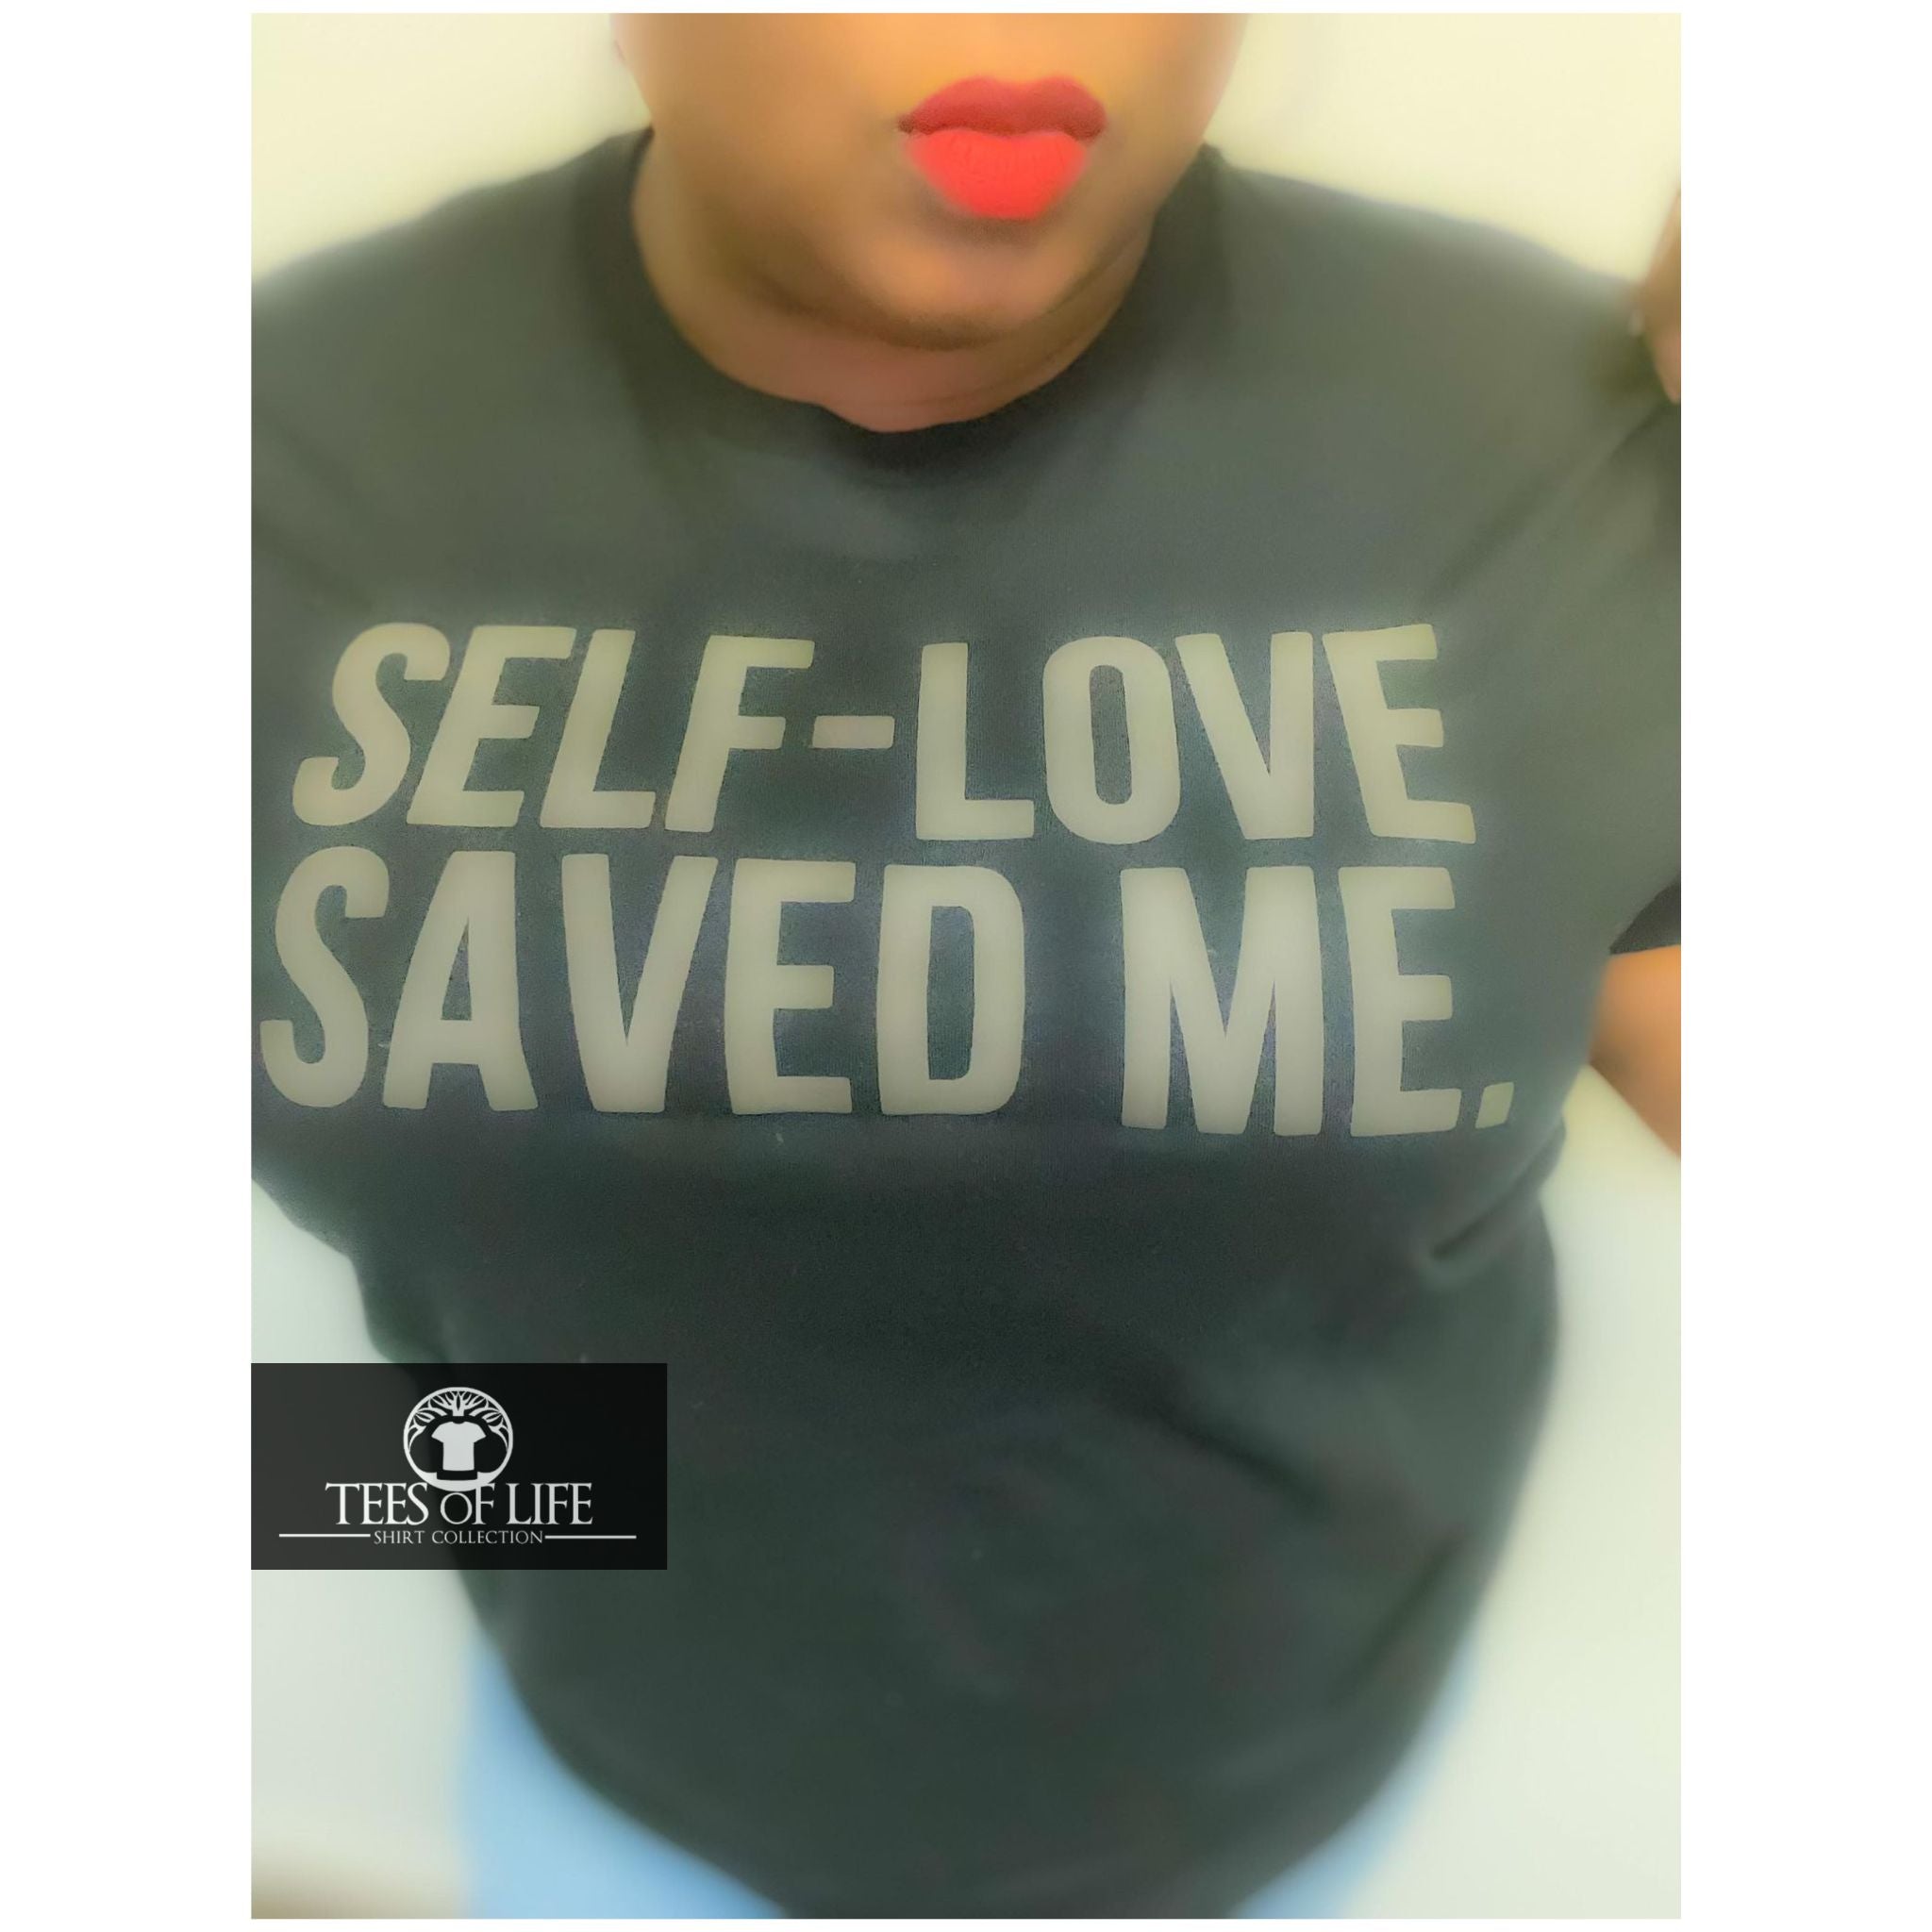 Self Love Saved Me Unisex Tee